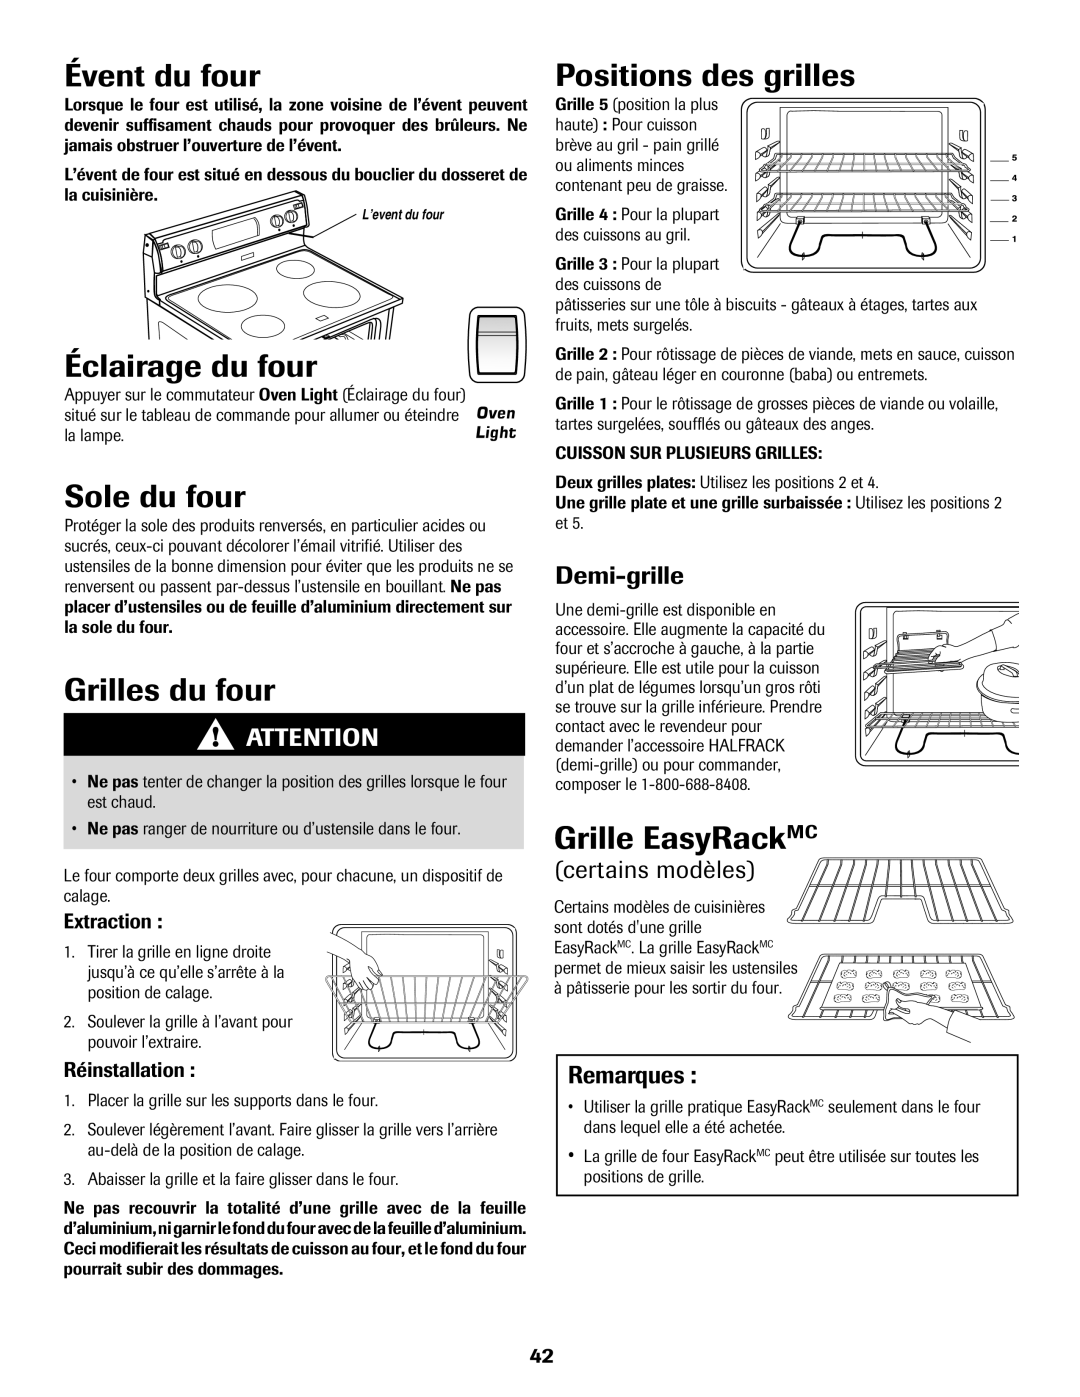 Amana Electric Range - Coil manual Évent du four, Éclairage du four, Sole du four, Grilles du four, Positions des grilles 